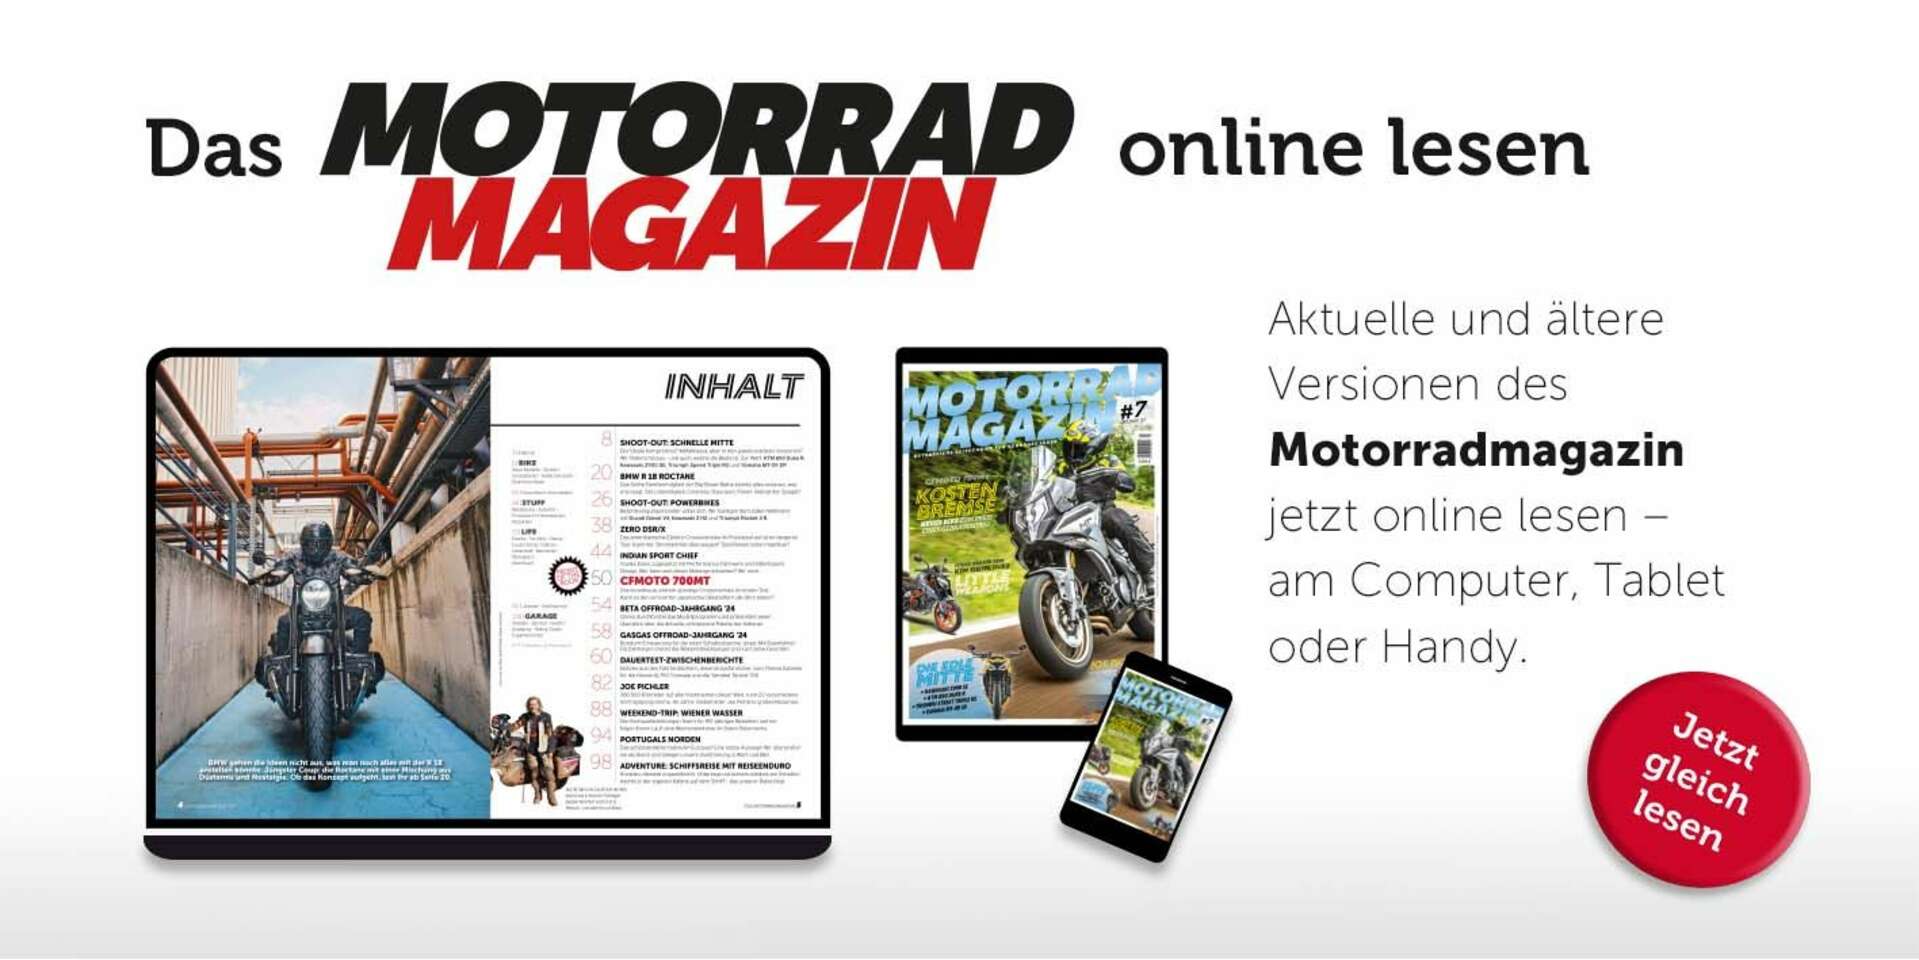 Das Motorrad-Magazin online lesen